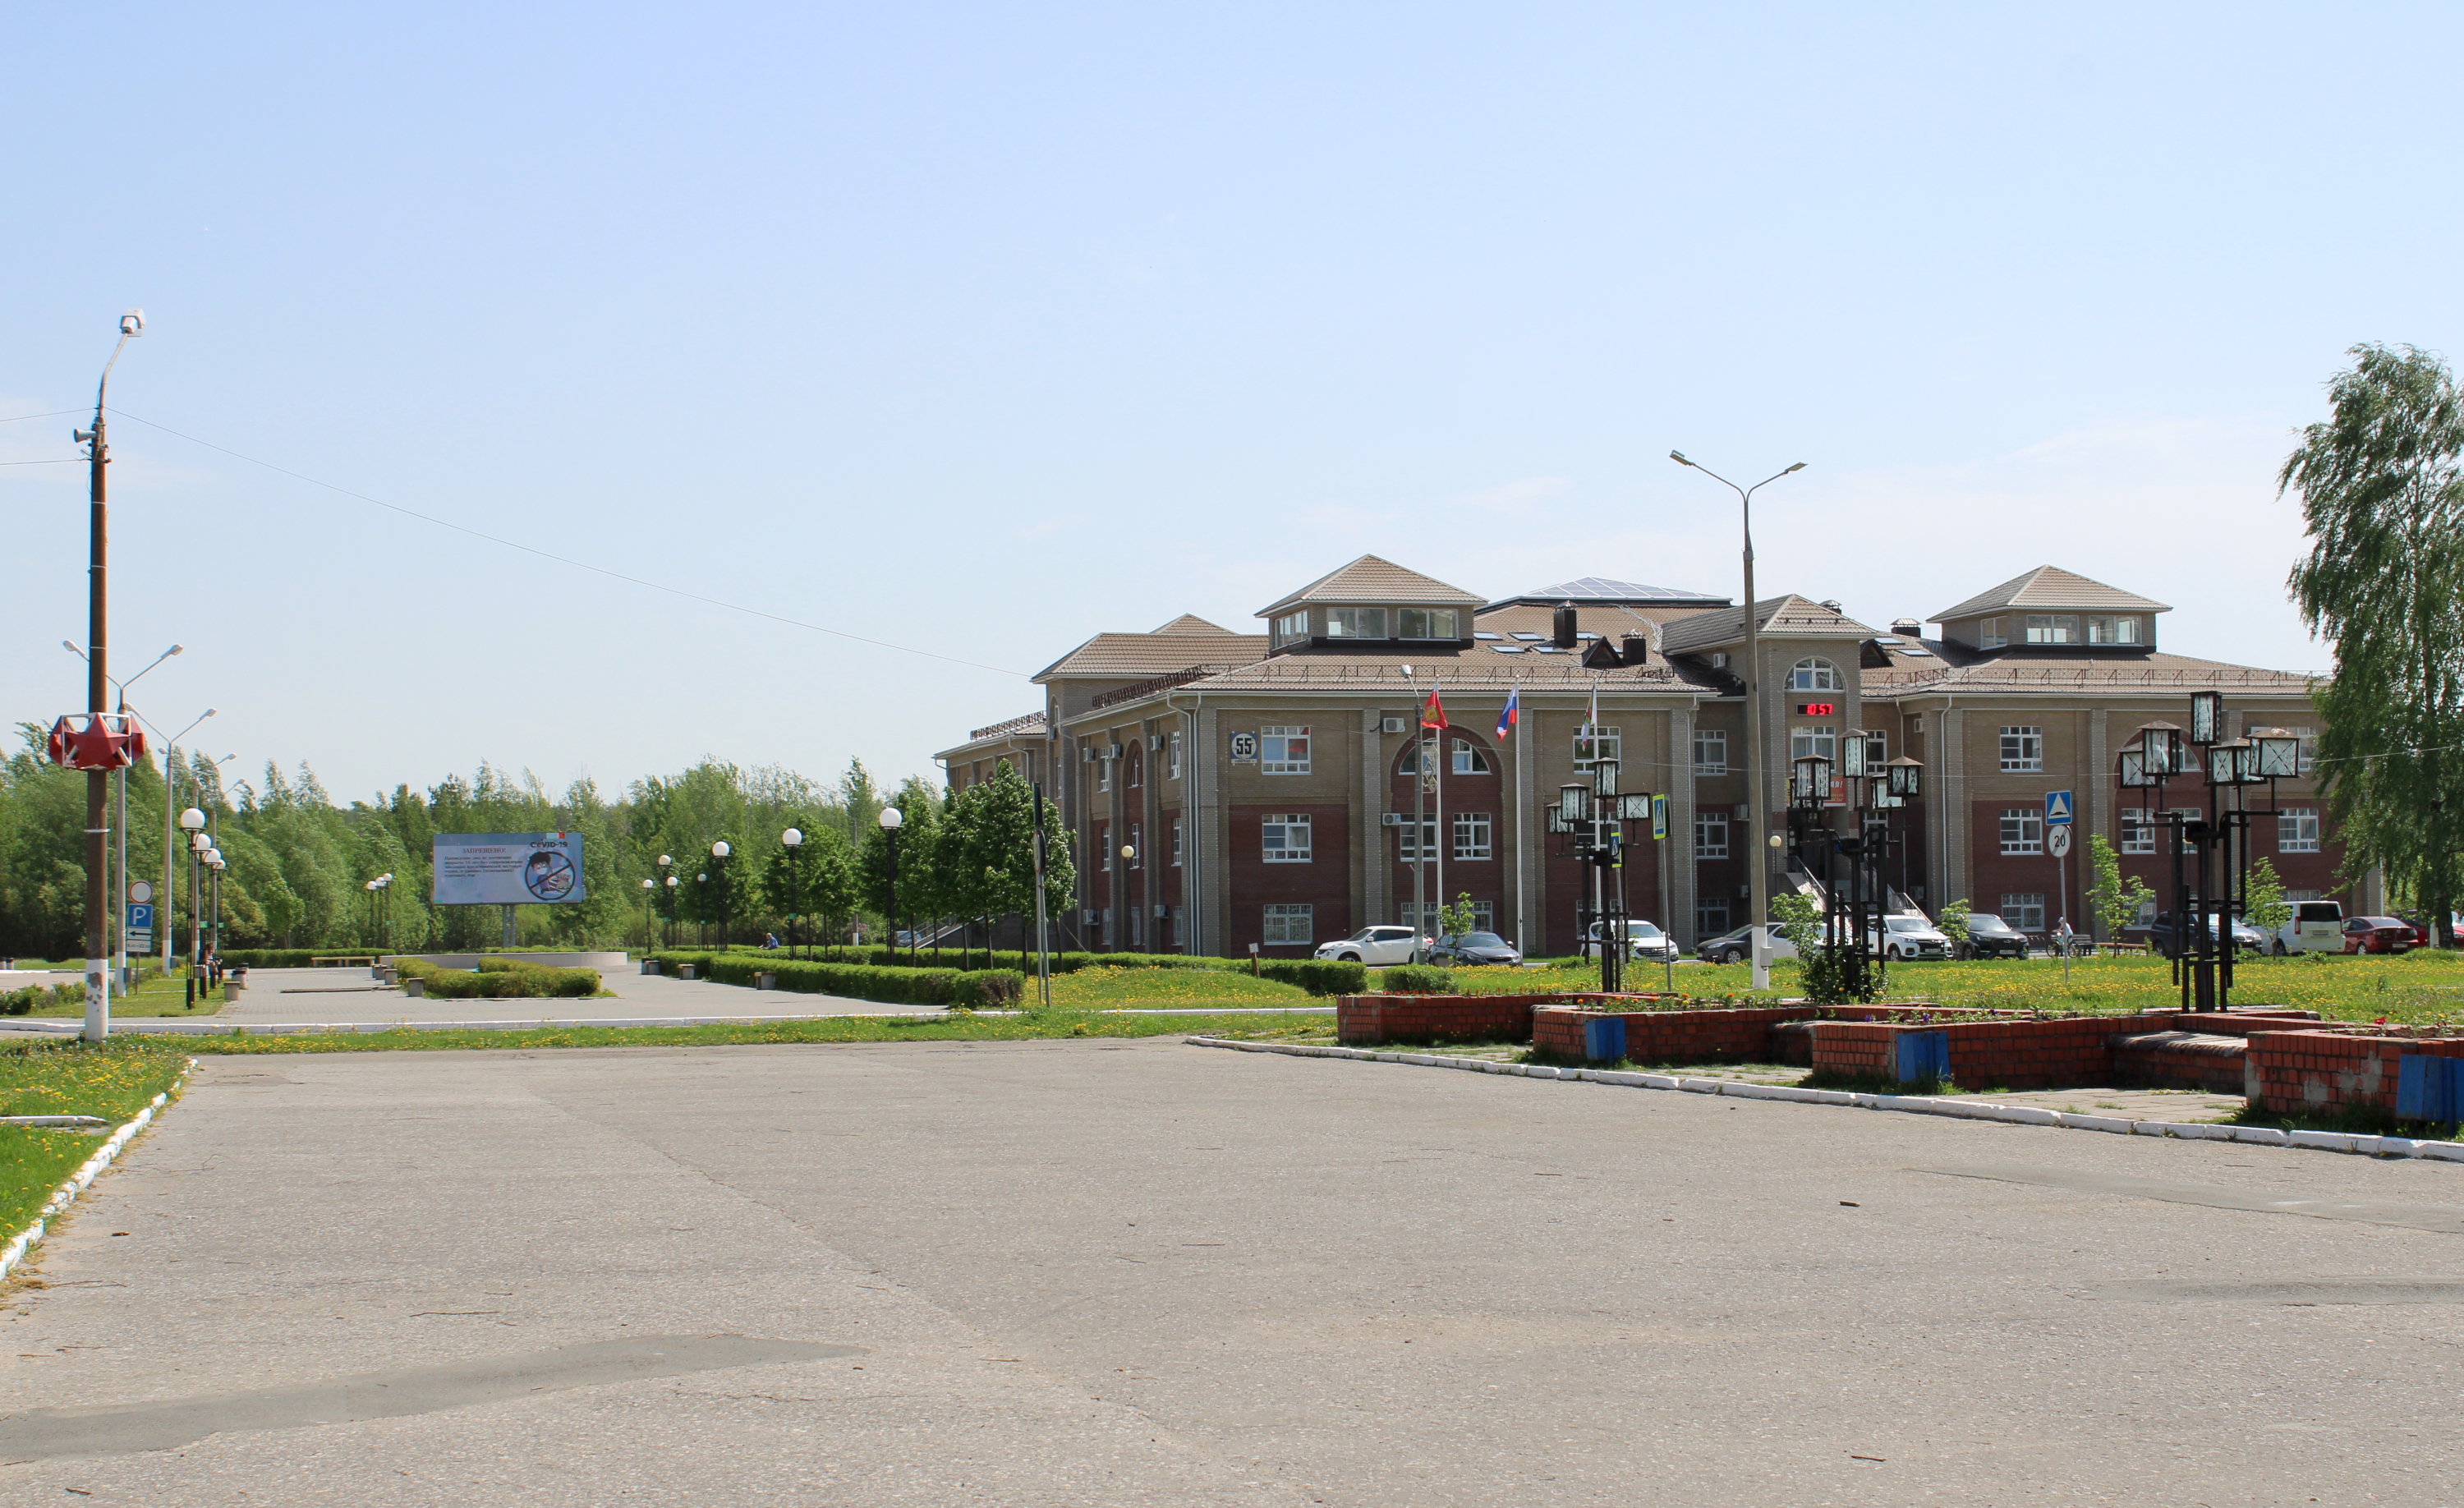 В коцне мая 2006 года все службы городской администрациипереехали в новое административное здание. В нем так же размещаются ГКМХ, КУМИ, Общественная приёмная, Общедоступная библиотека, ЖЭУ-1 и ЖЭУ-2.
